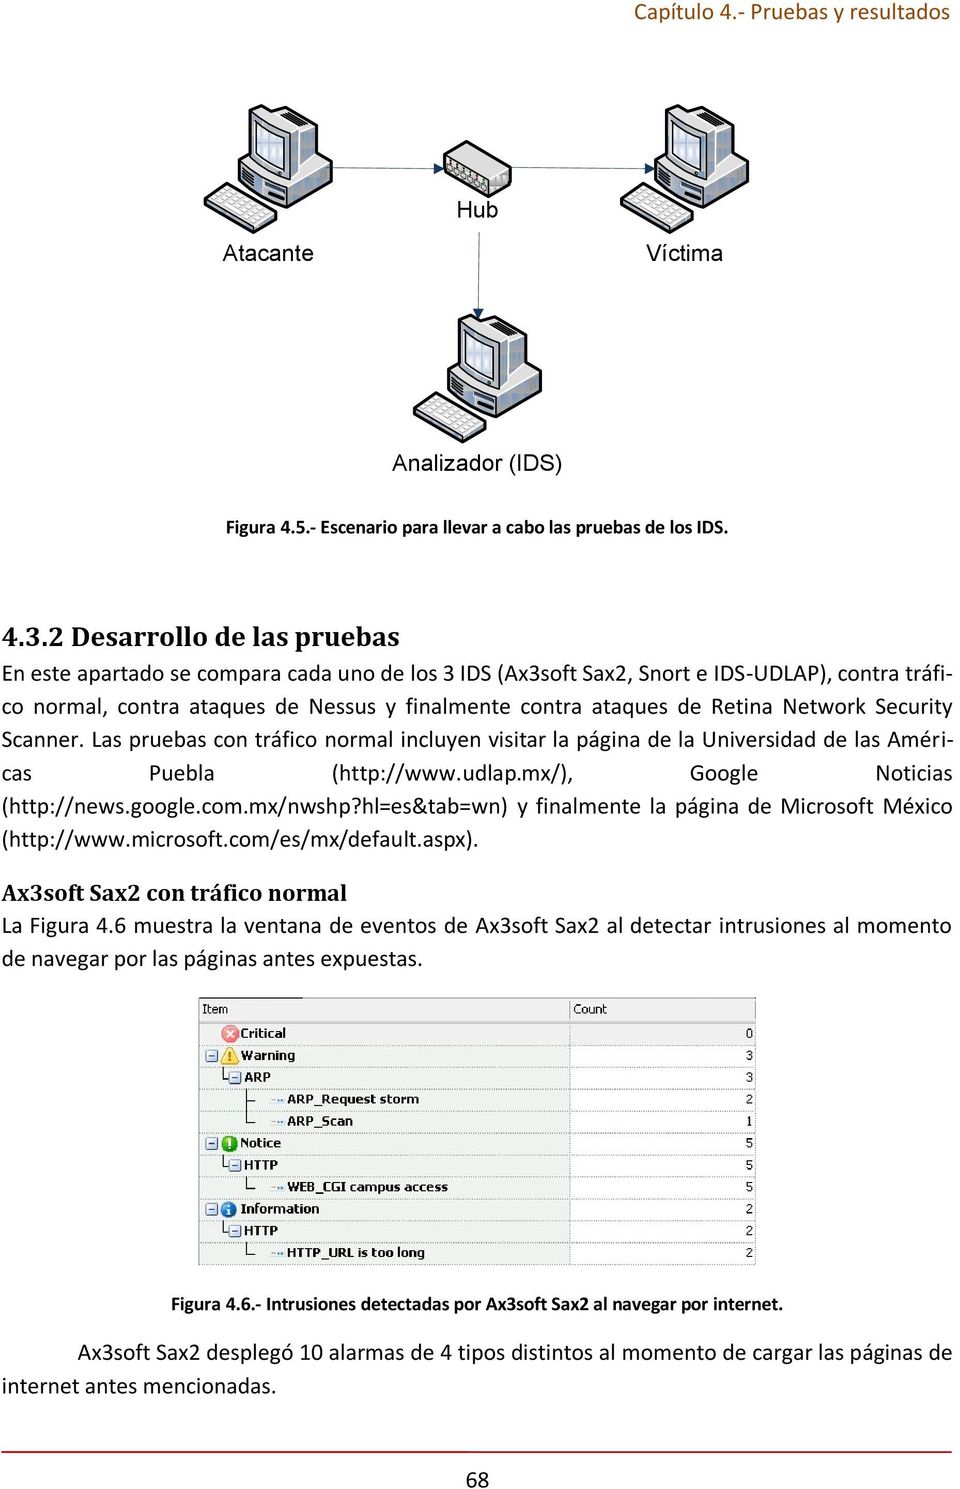 Network Security Scanner. Las pruebas con tráfico normal incluyen visitar la página de la Universidad de las Américas Puebla (http://www.udlap.mx/), Google Noticias (http://news.google.com.mx/nwshp?